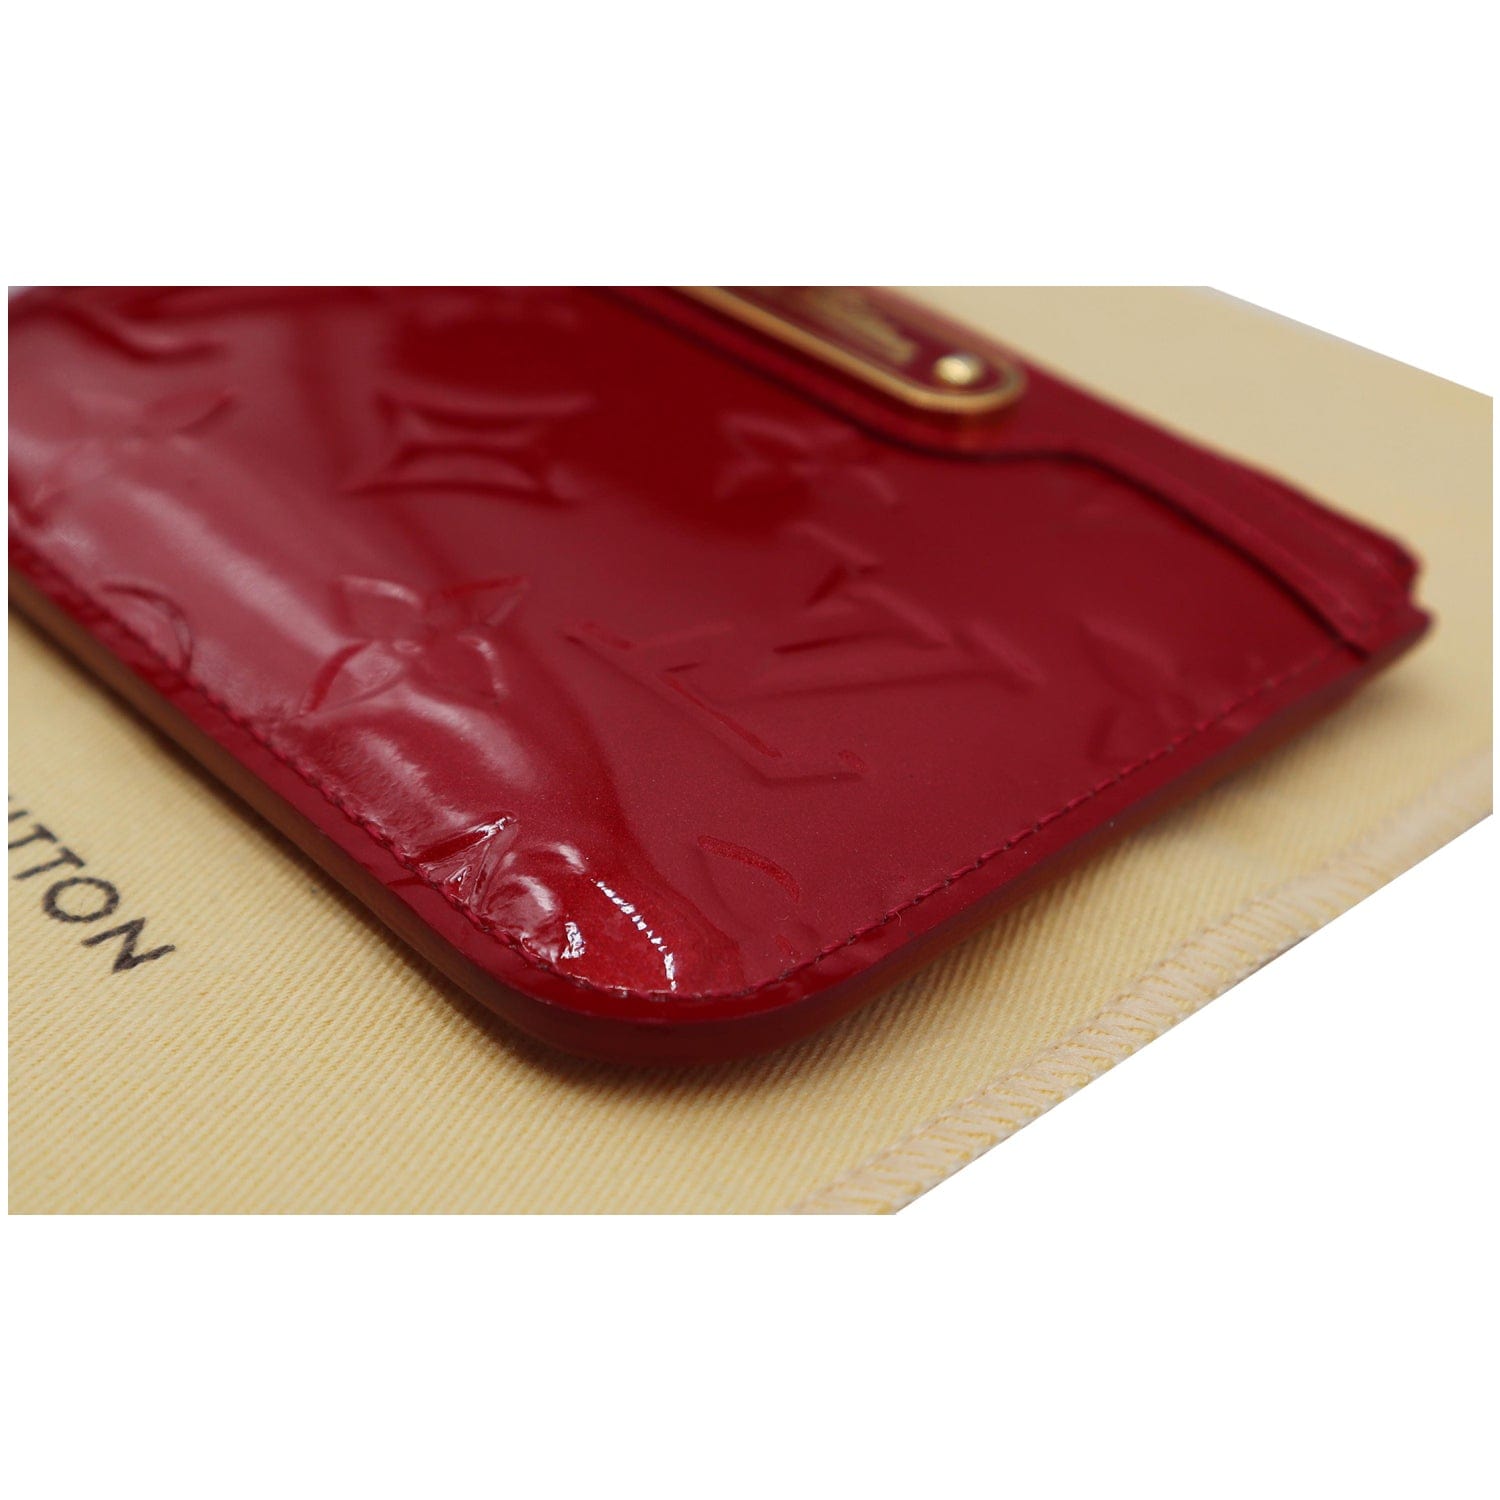 Louis Vuitton M91388 Monogram Vernis Porte Monet-Owazo Wallet Coin Purse Case 861512